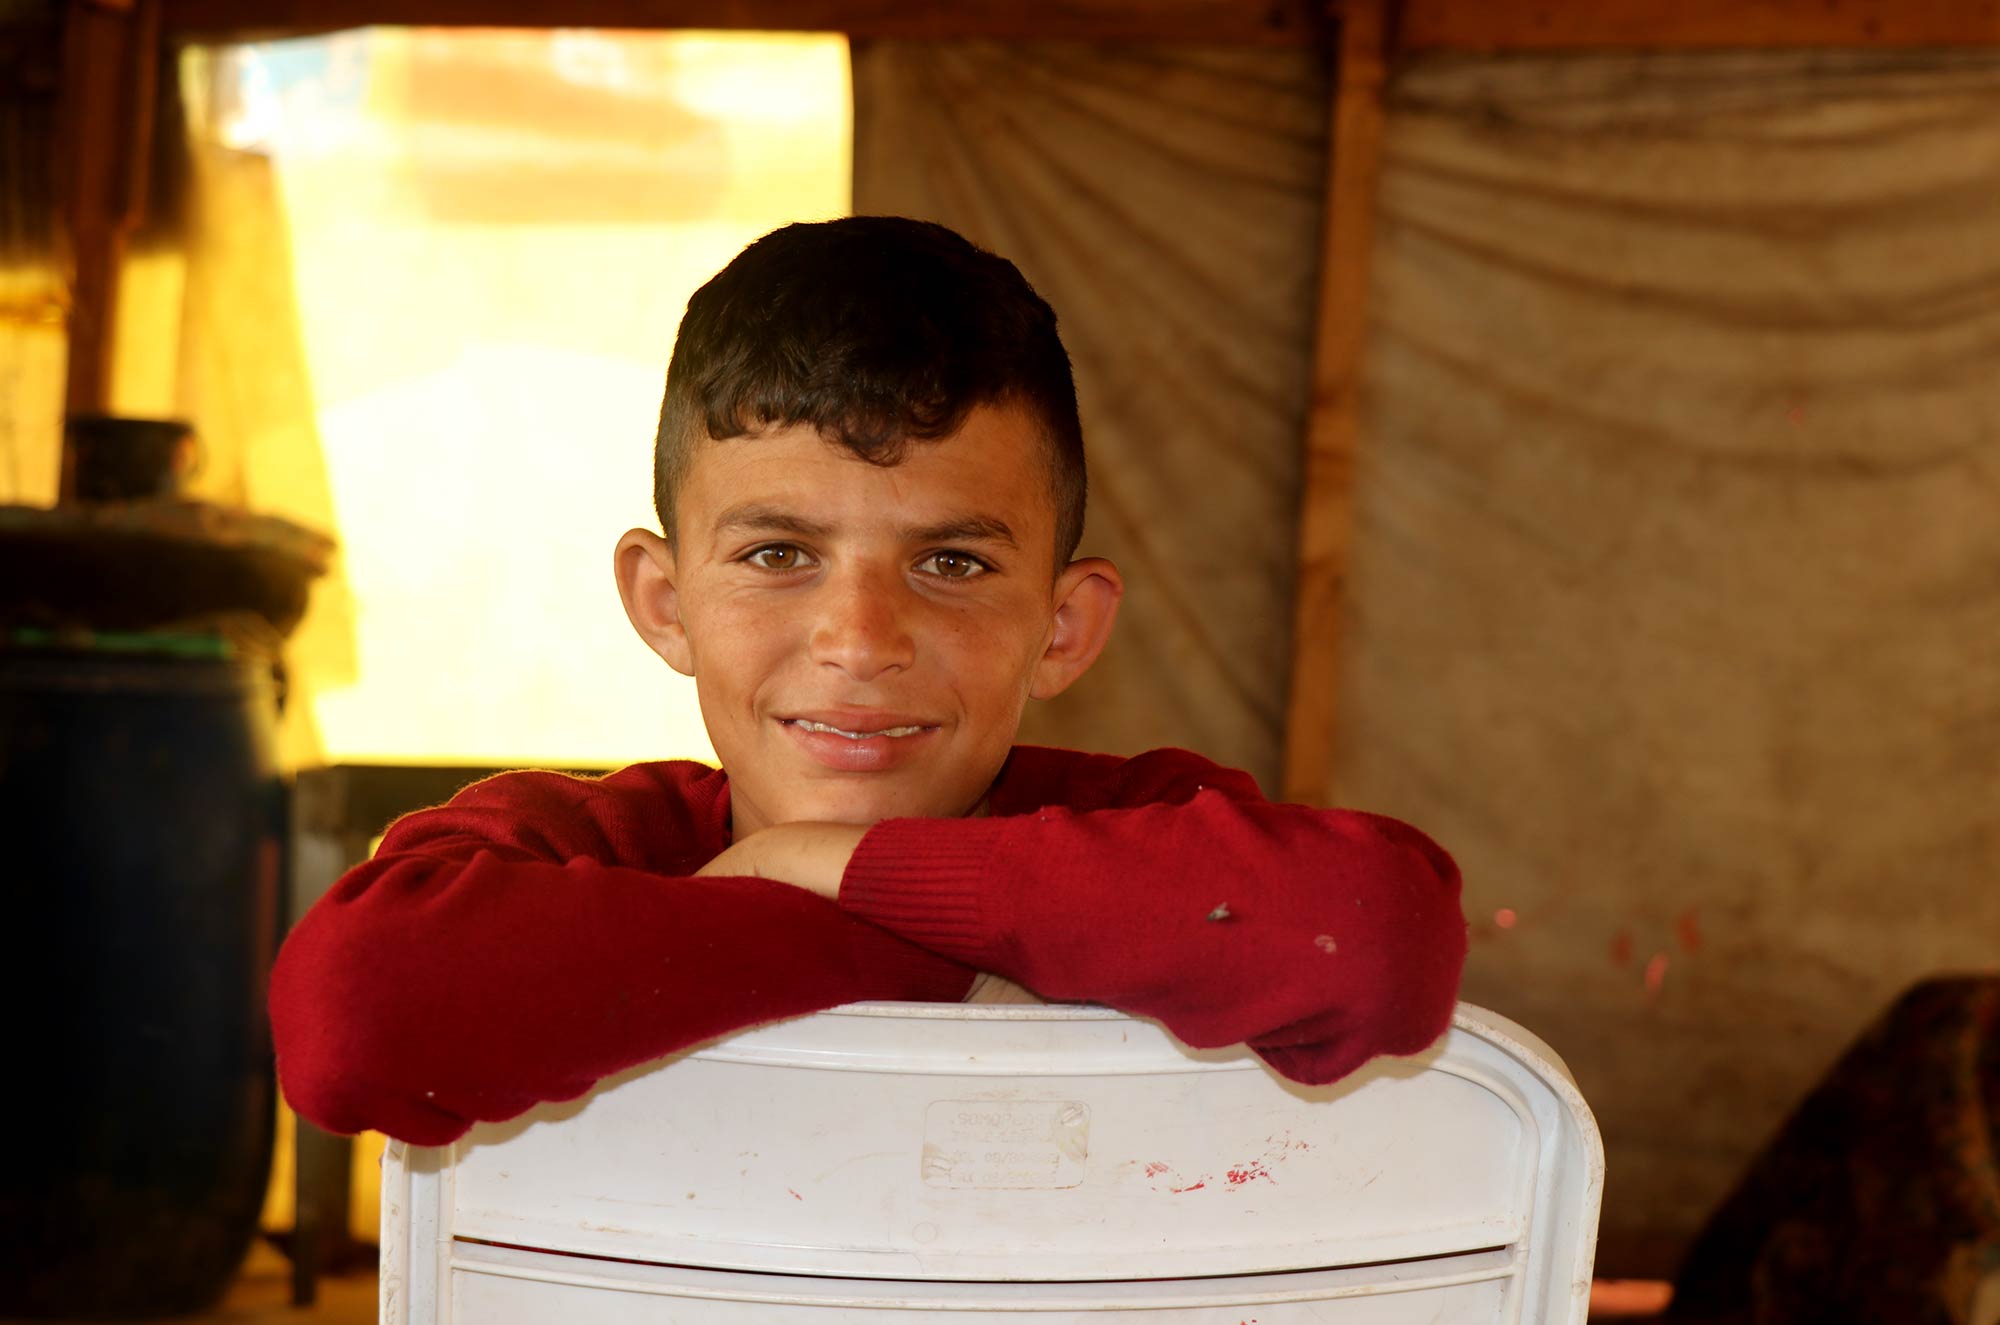 Shady, a 16-year-old Syrian refugee